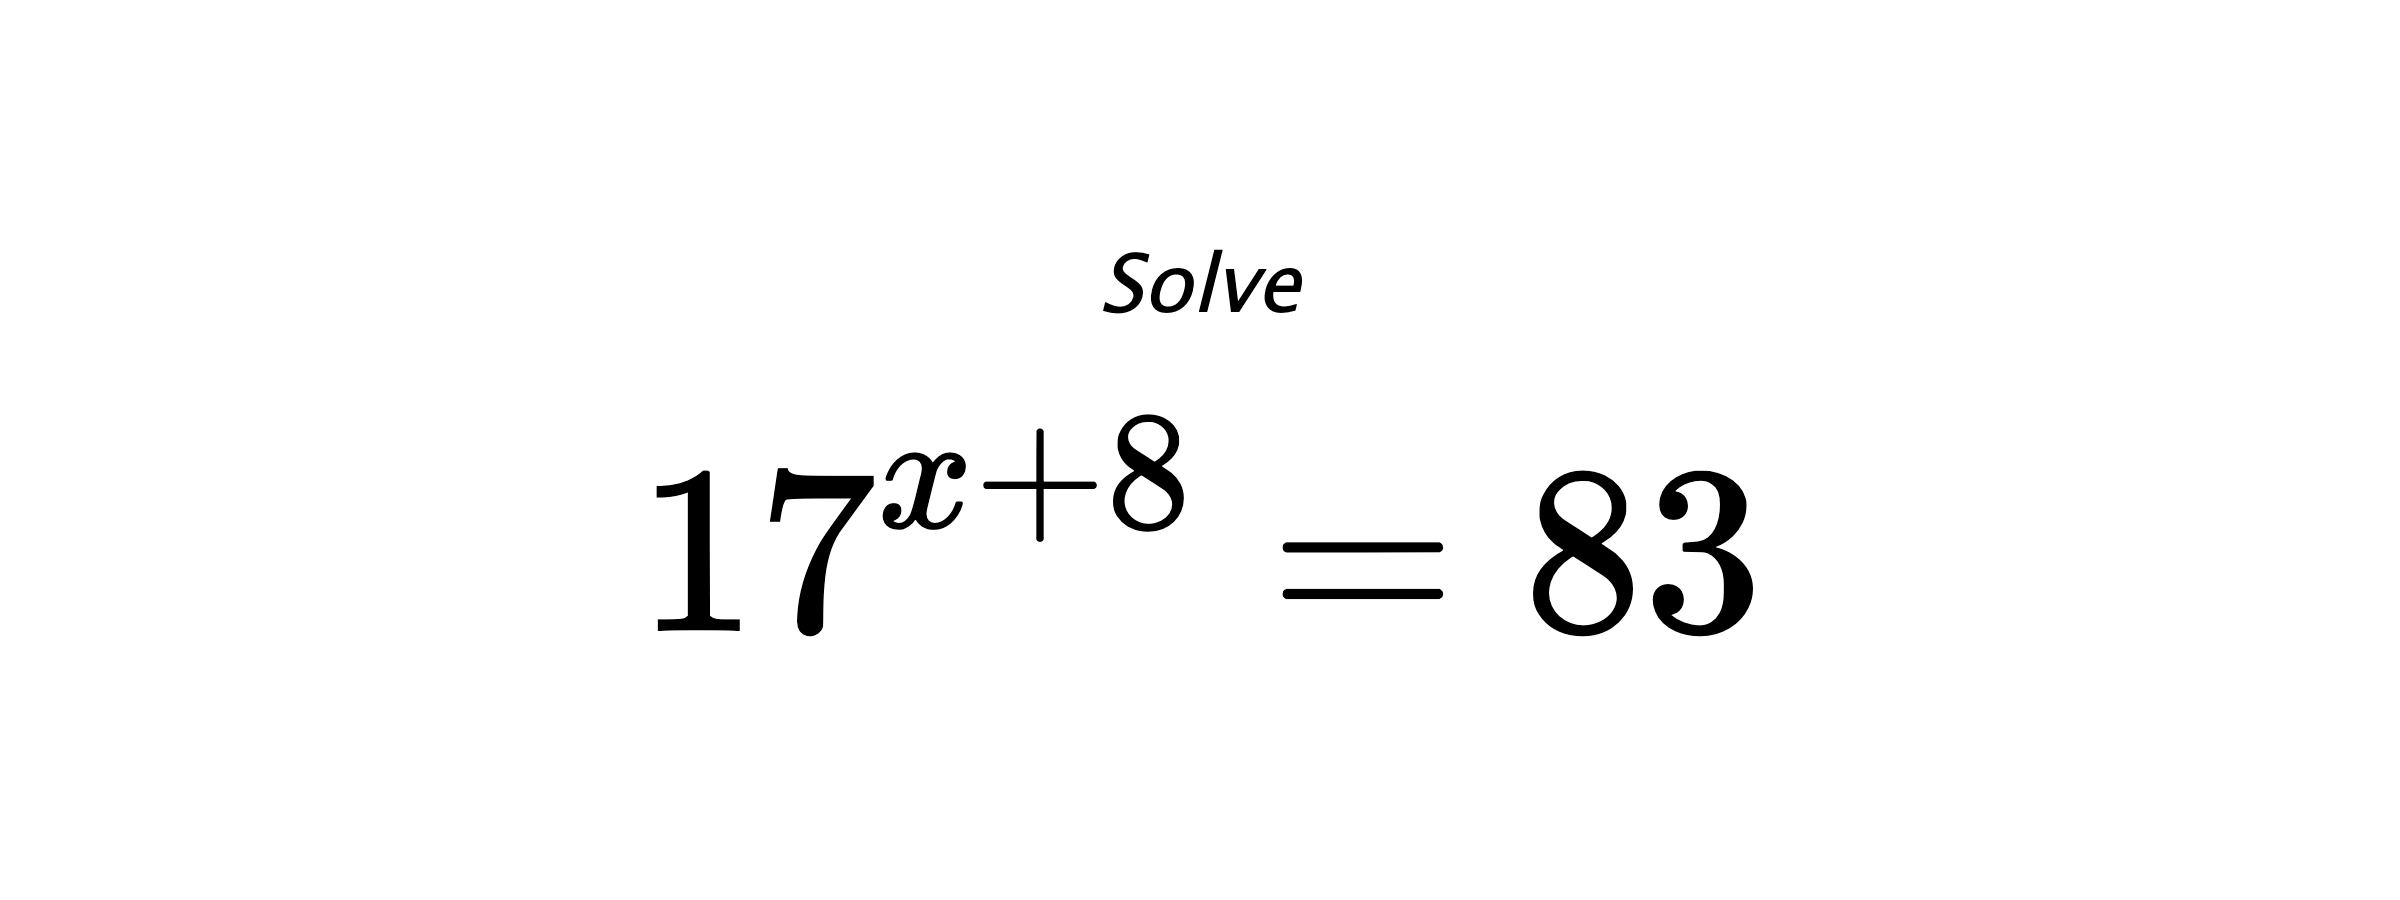 Solve $ 17^{x+8} = 83 $